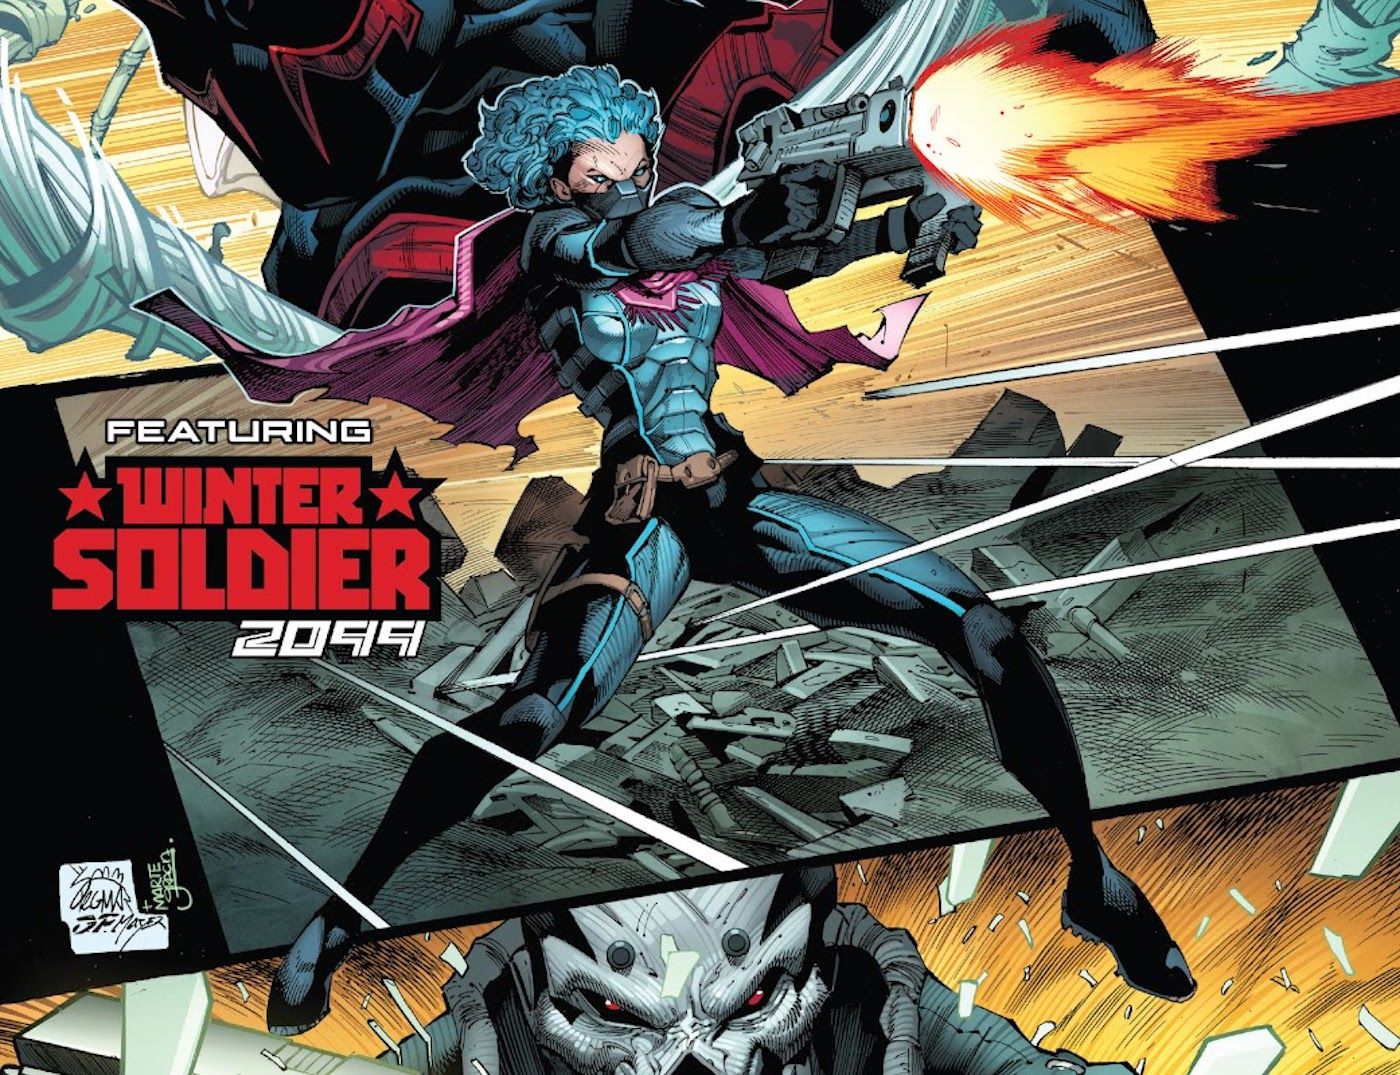 Winter Soldier 2099